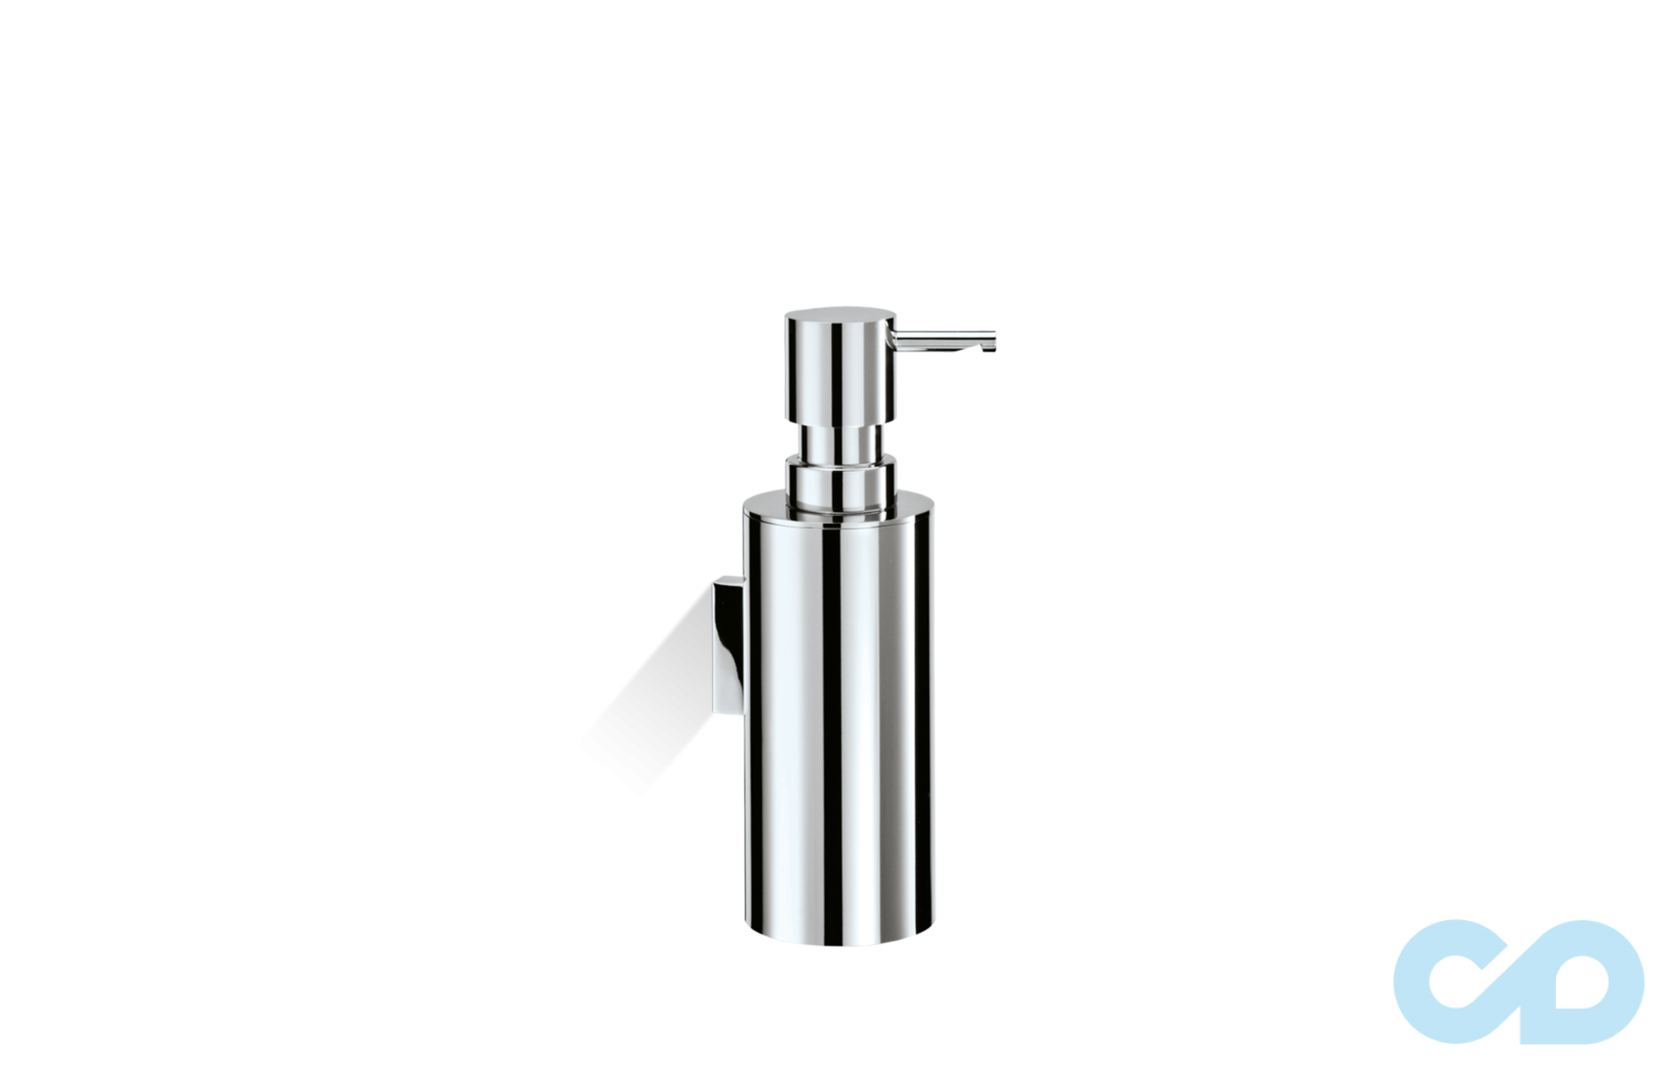 Настенный дозатор для мыла MK WSP 0521100